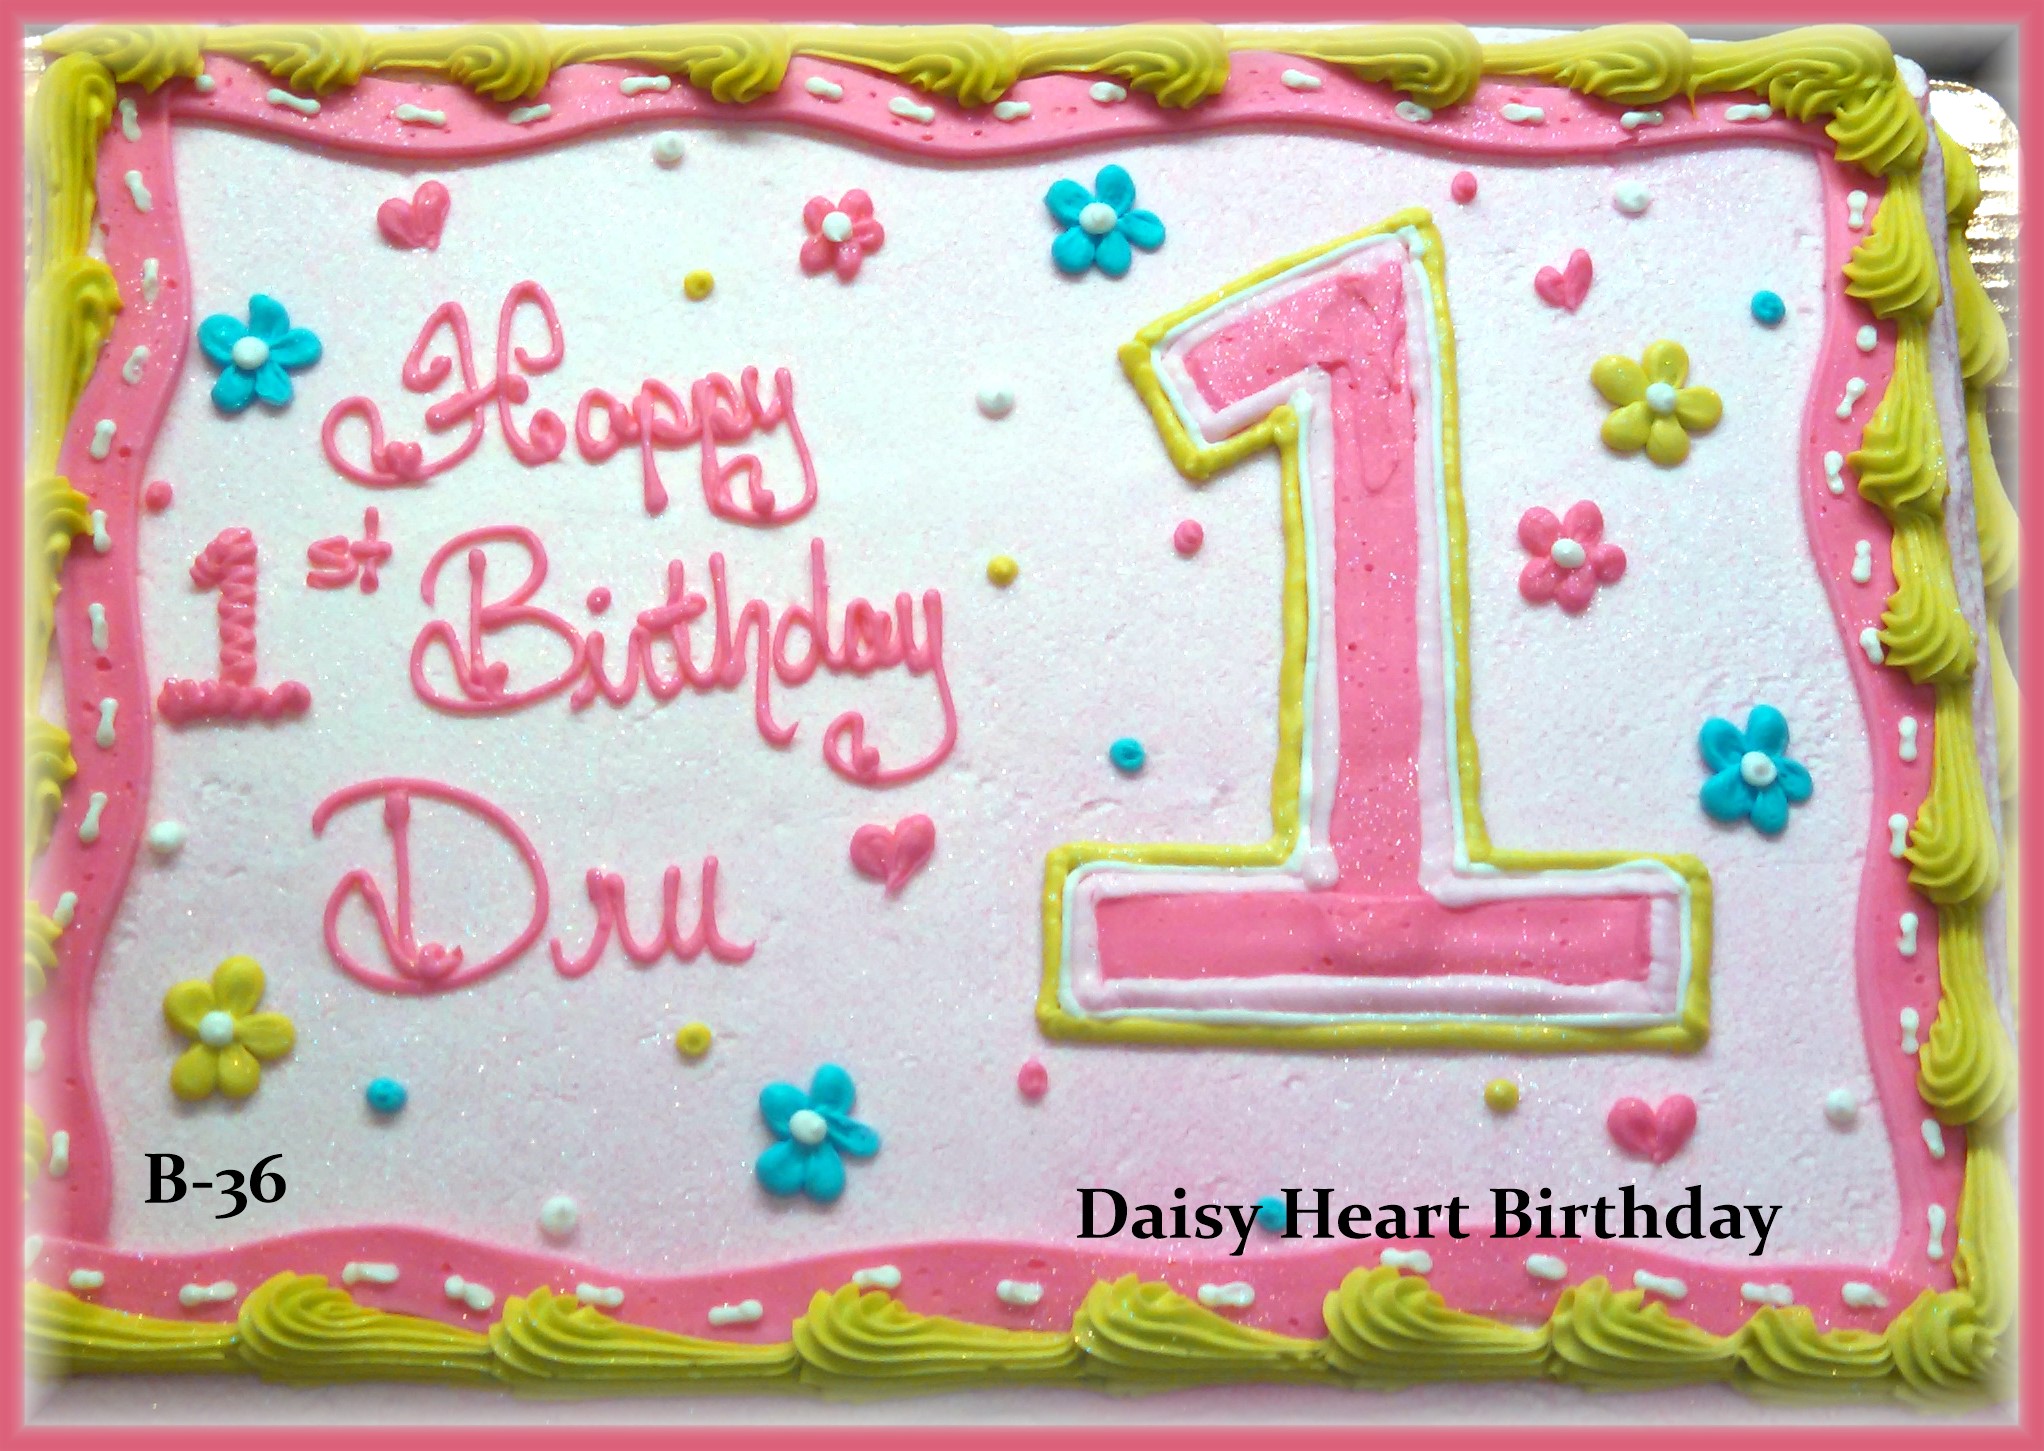 B-36 Daisy Heart Birthday